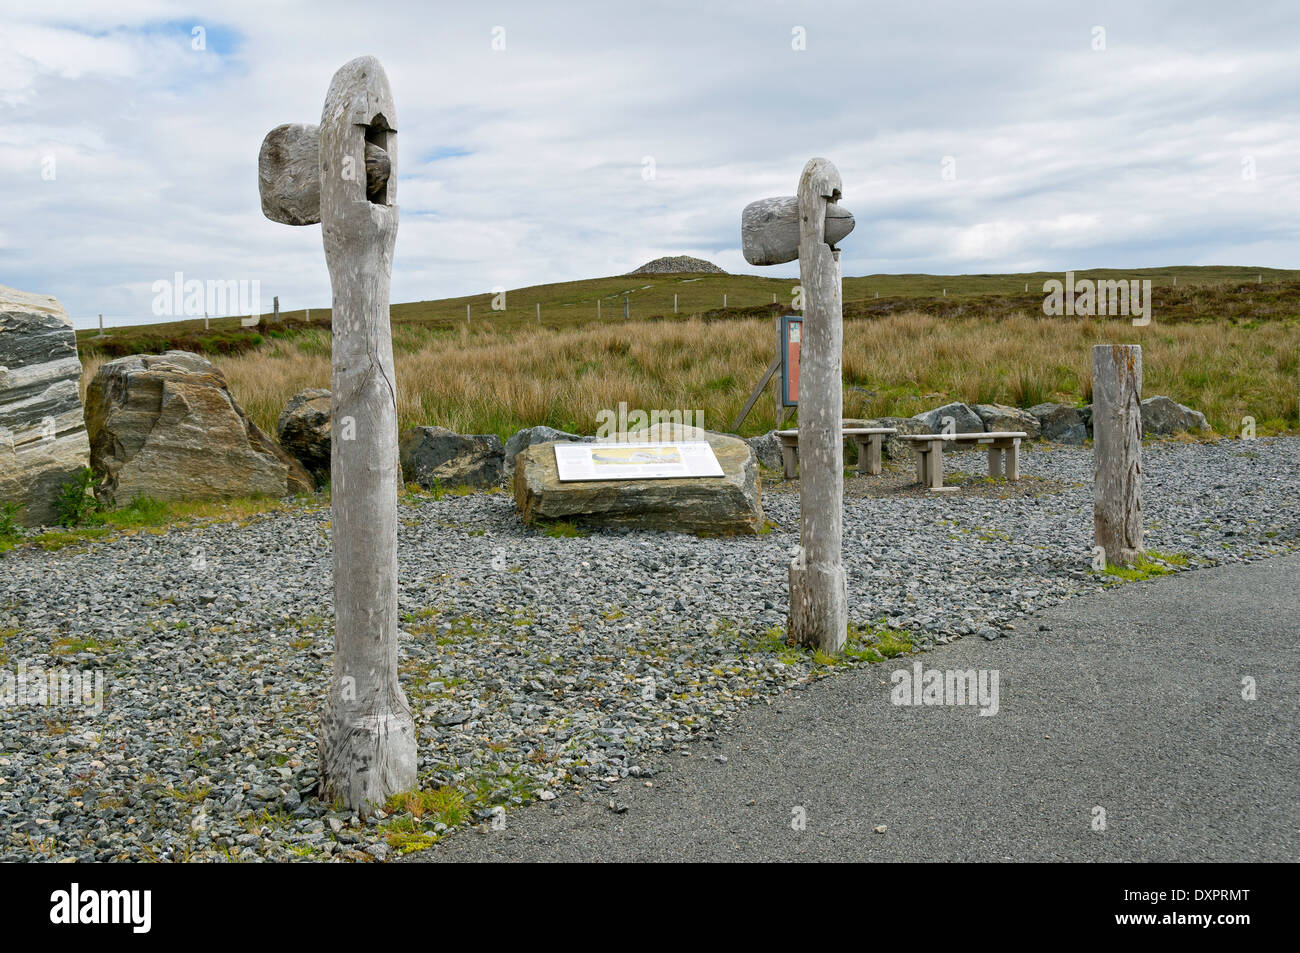 Replikat Steinaxt und Informationstafel am Parkplatz, gekammert Barpa Langass Cairn, North Uist, Western Isles, Schottland, Vereinigtes Königreich Stockfoto